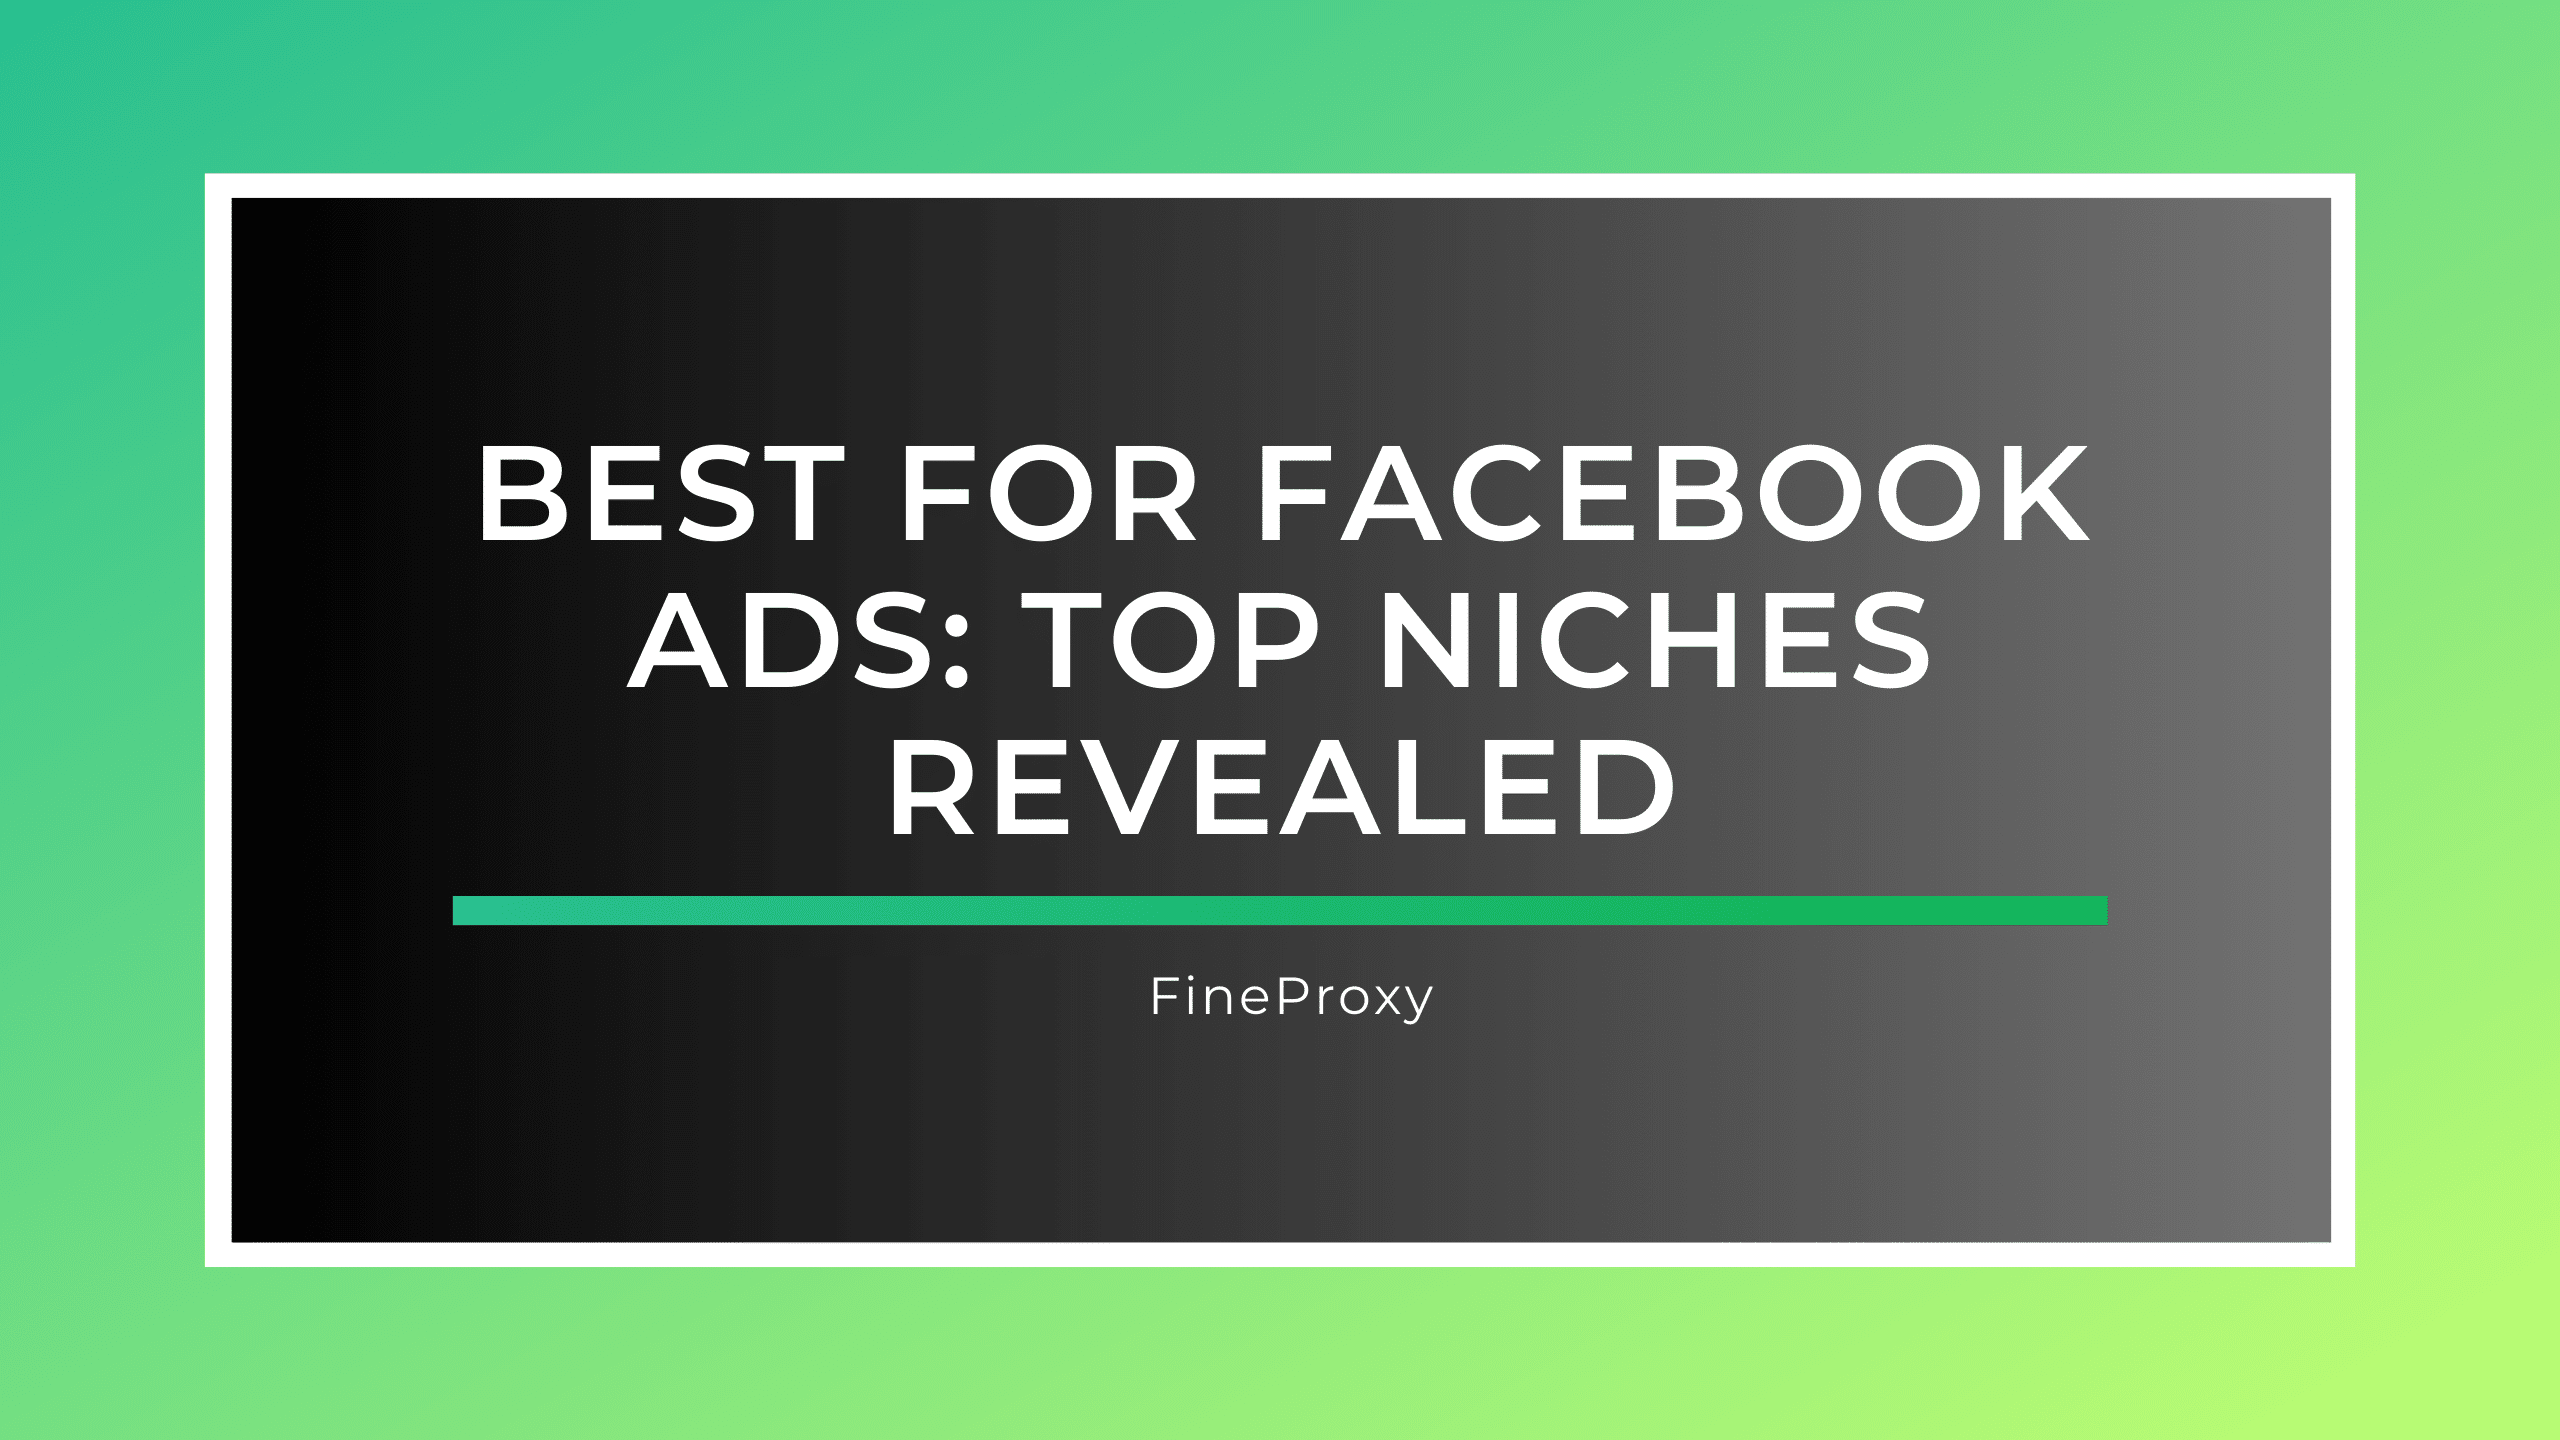 फेसबुक विज्ञापनों के लिए सर्वश्रेष्ठ: शीर्ष निचेज़ का खुलासा